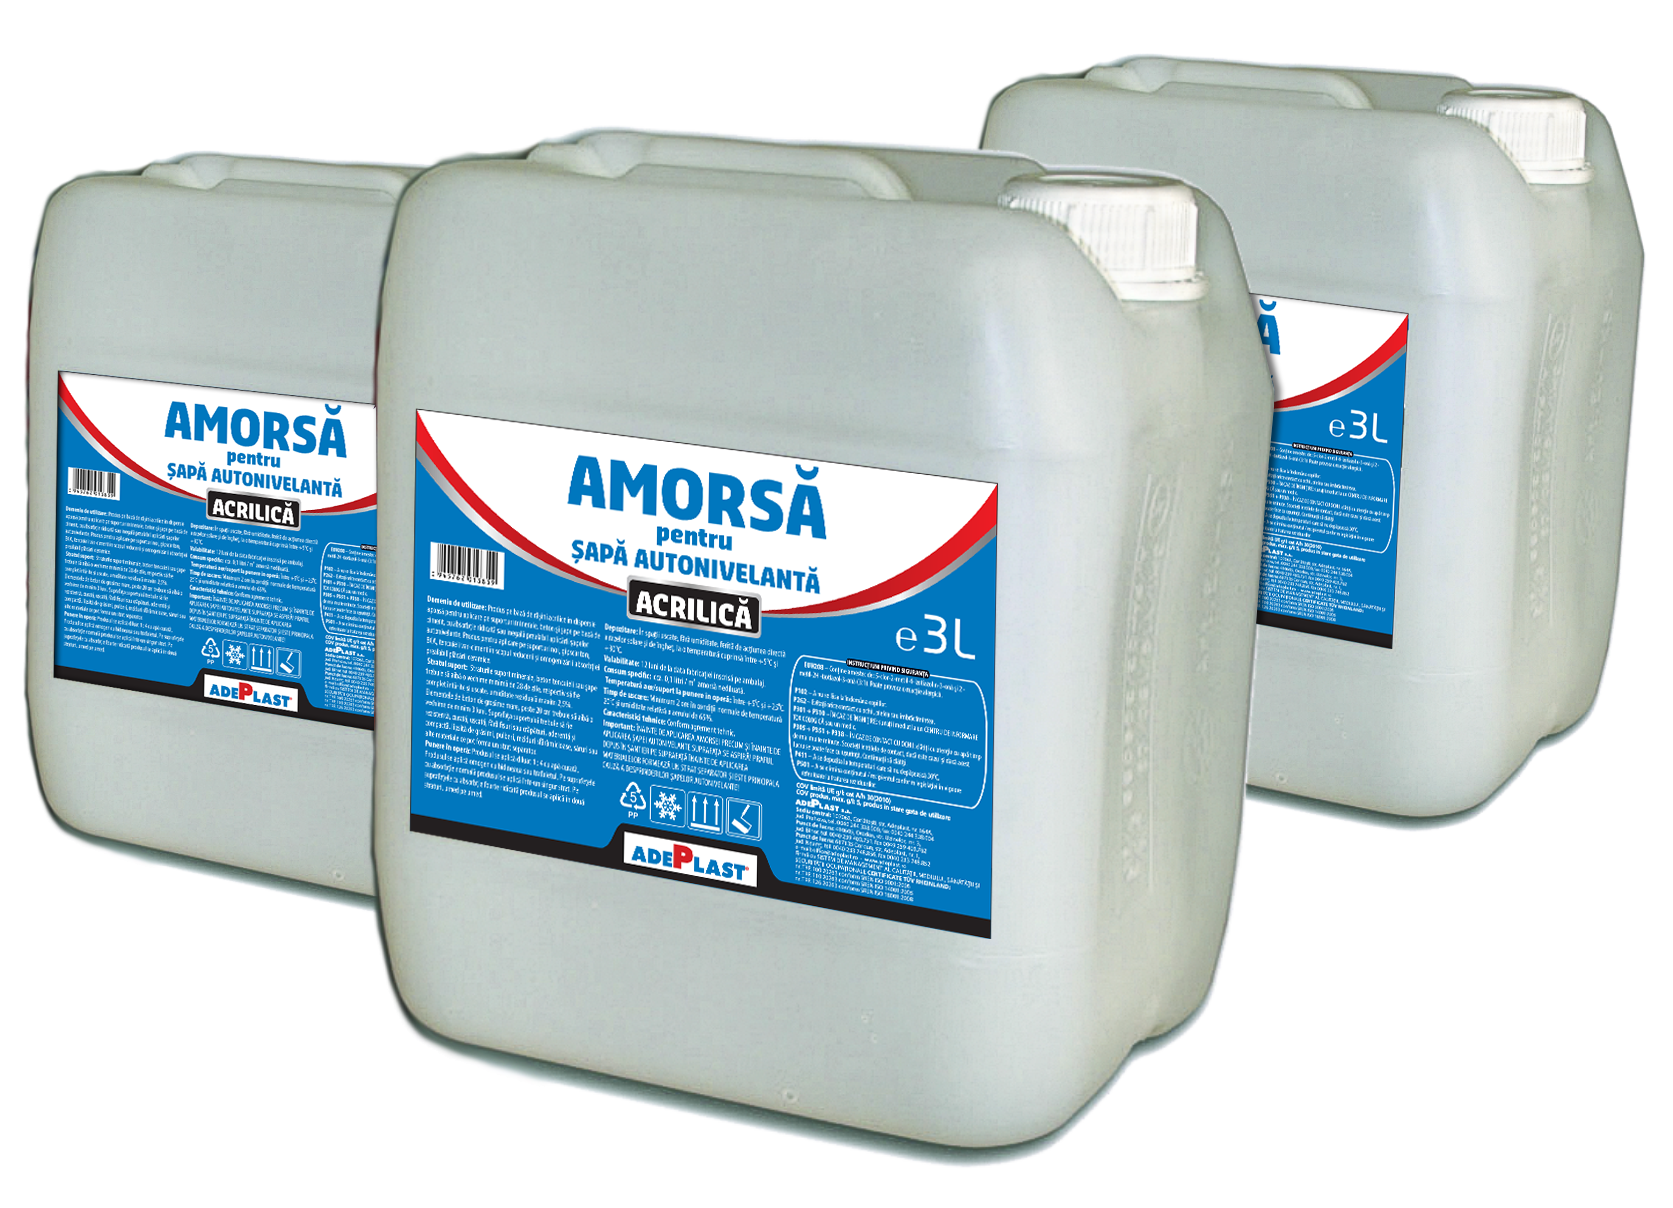 Amorse pentru vopseluri - Amorsa acrilica pentru sapa autonivelanta Adeplast 3 L, maxbau.ro